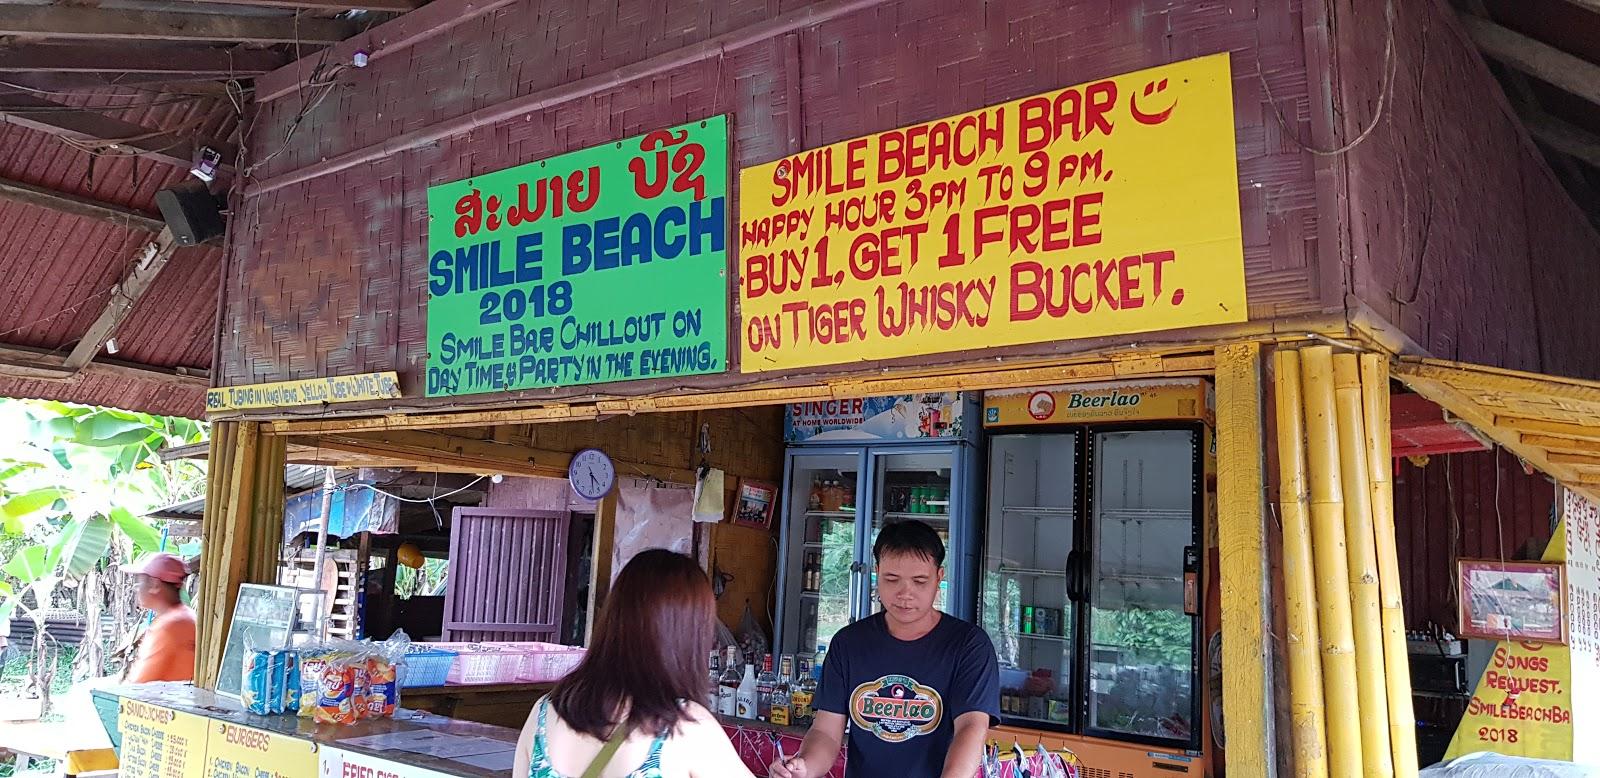 Sandee Smile Beach Bar Photo